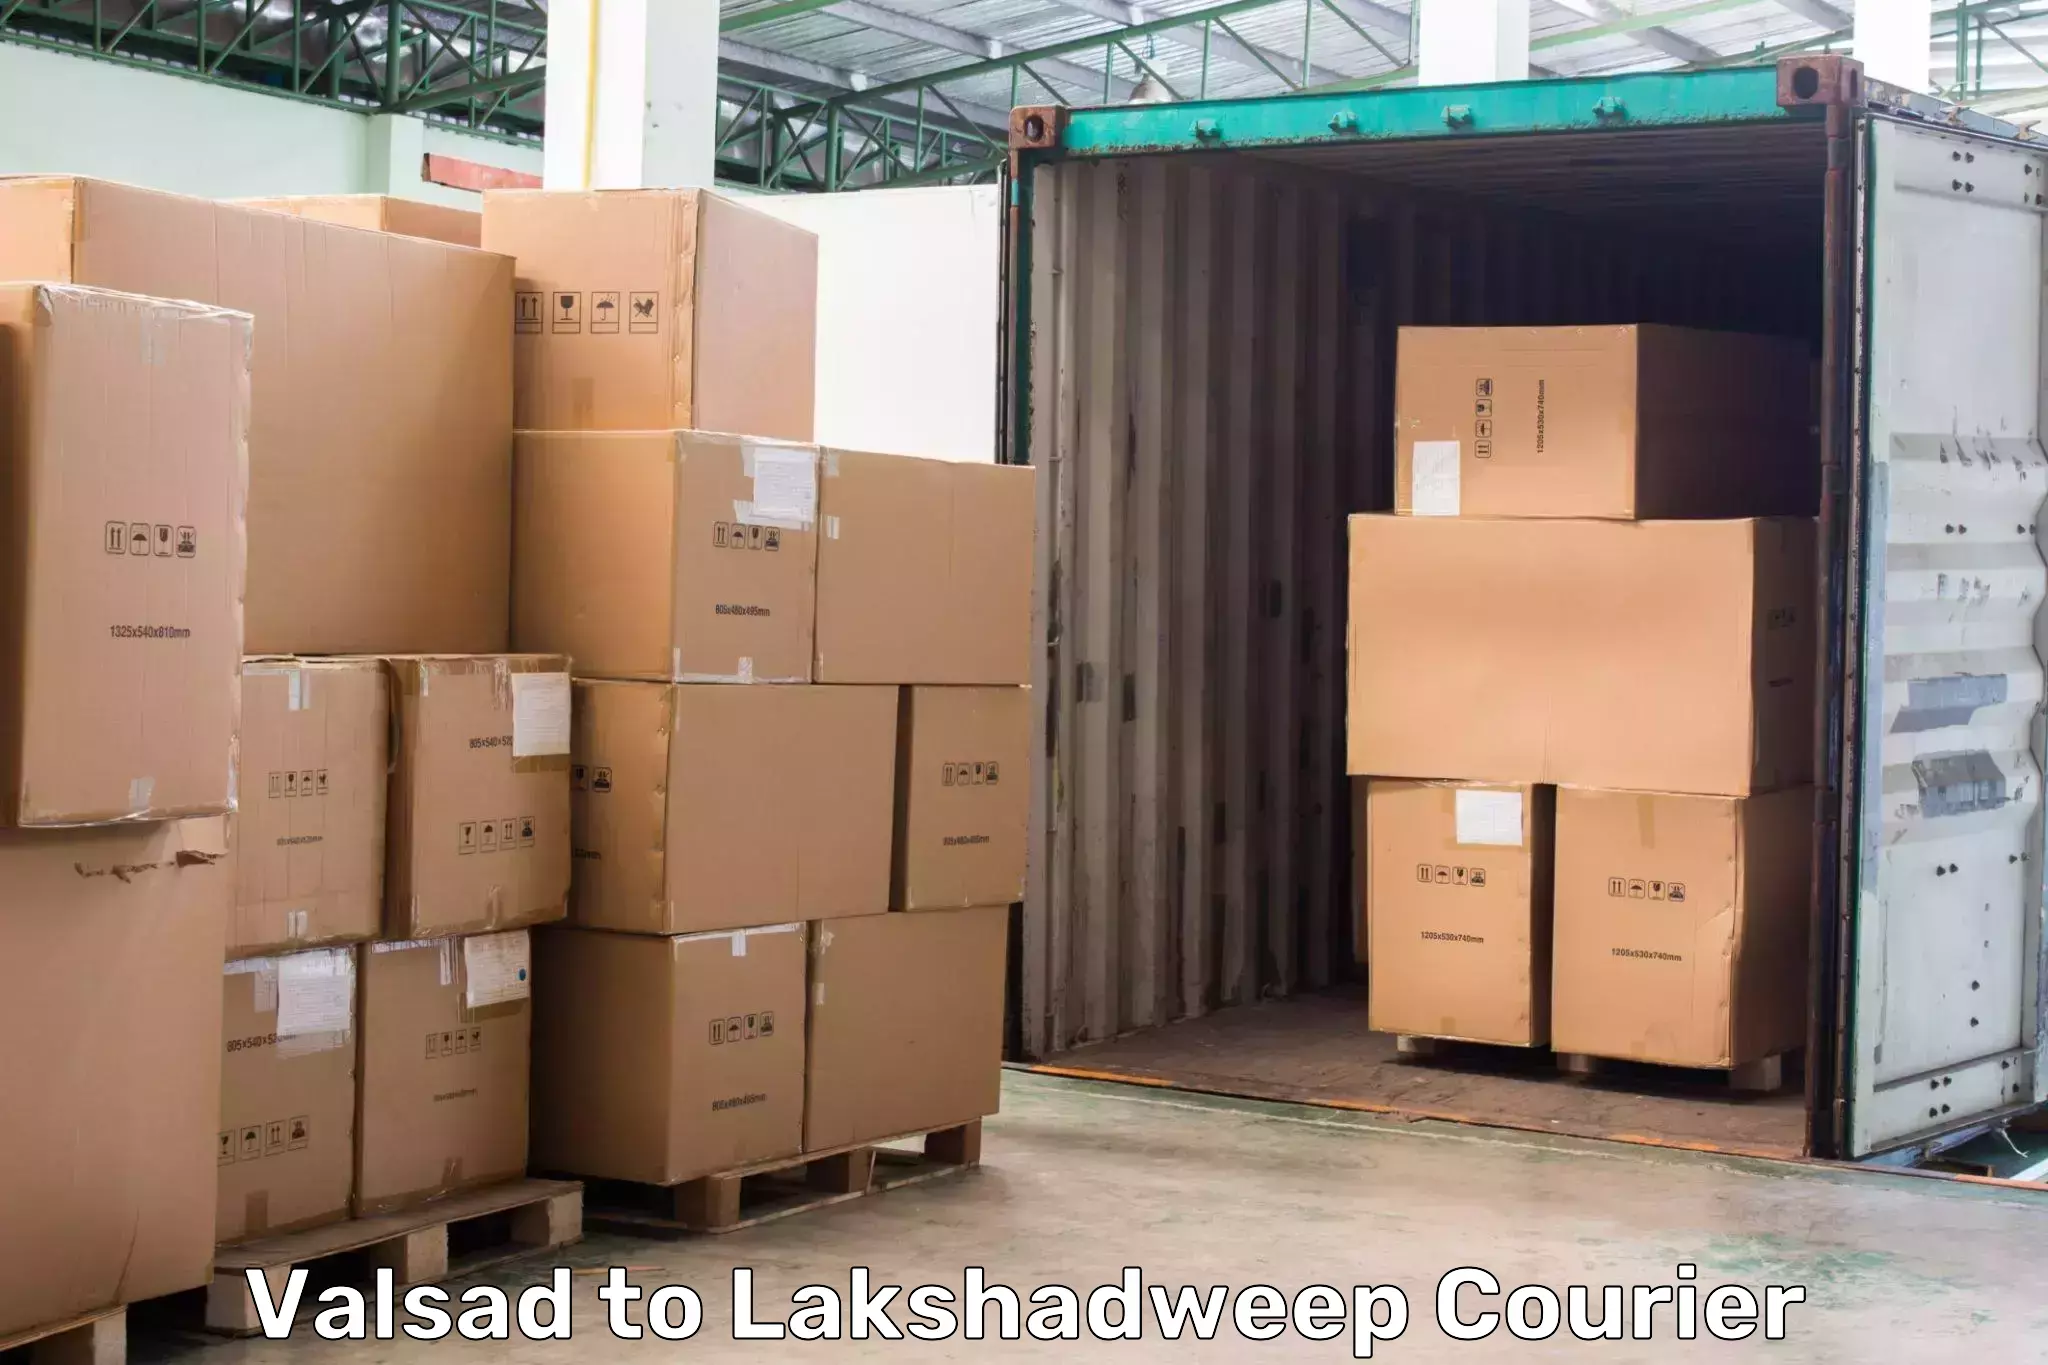 Global logistics network Valsad to Lakshadweep